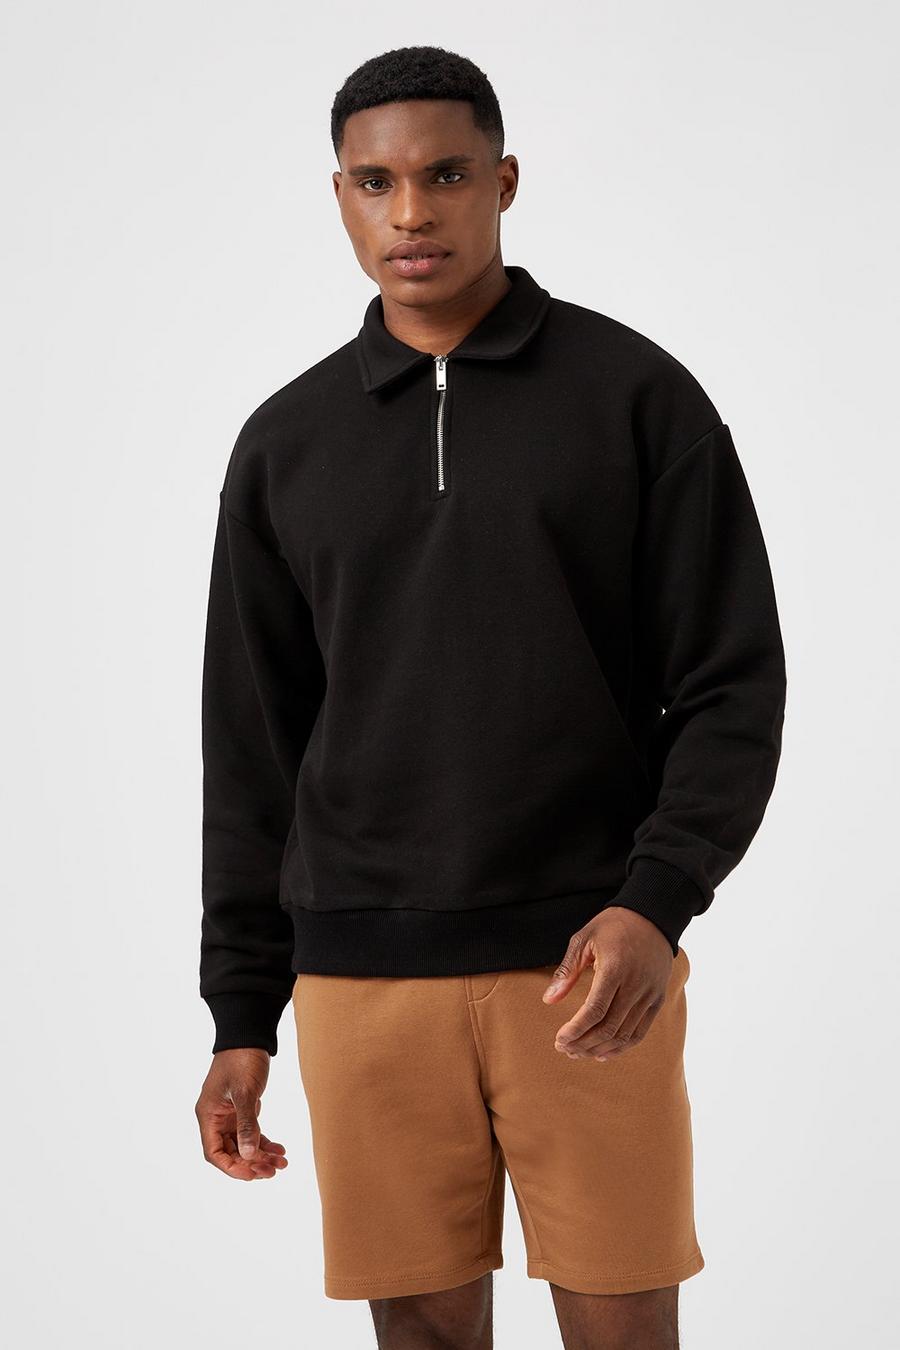 Black Collared Zip Sweatshirt